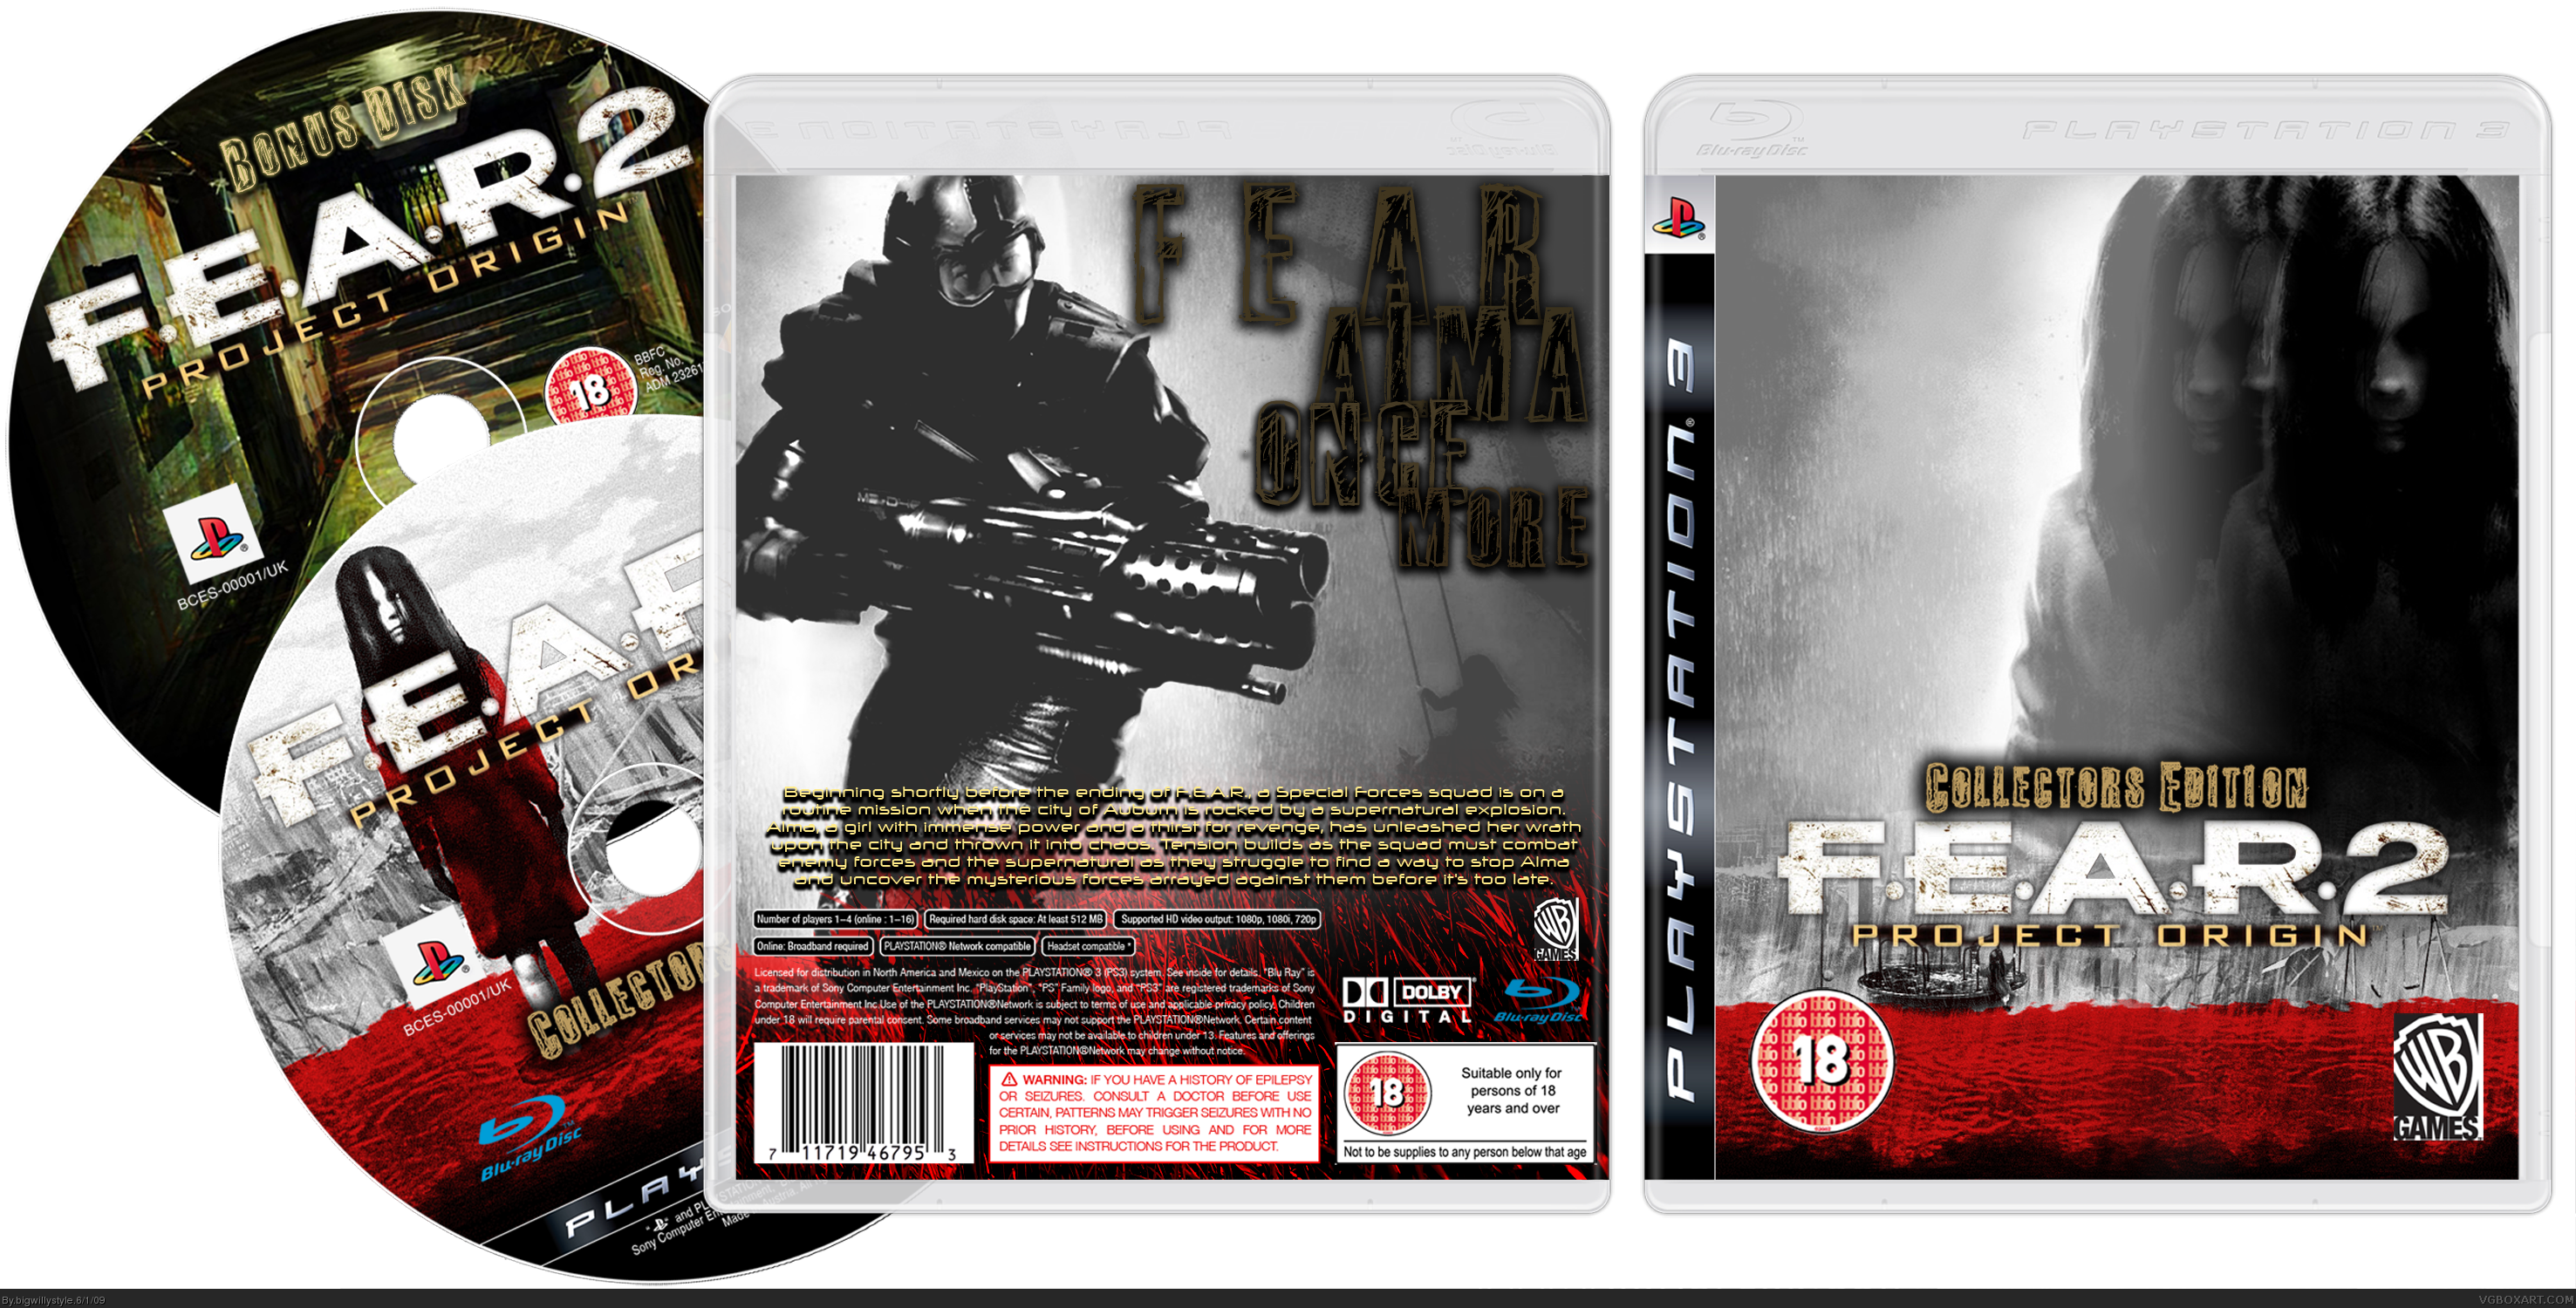 F.E.A.R 2 Collectors Edition box cover